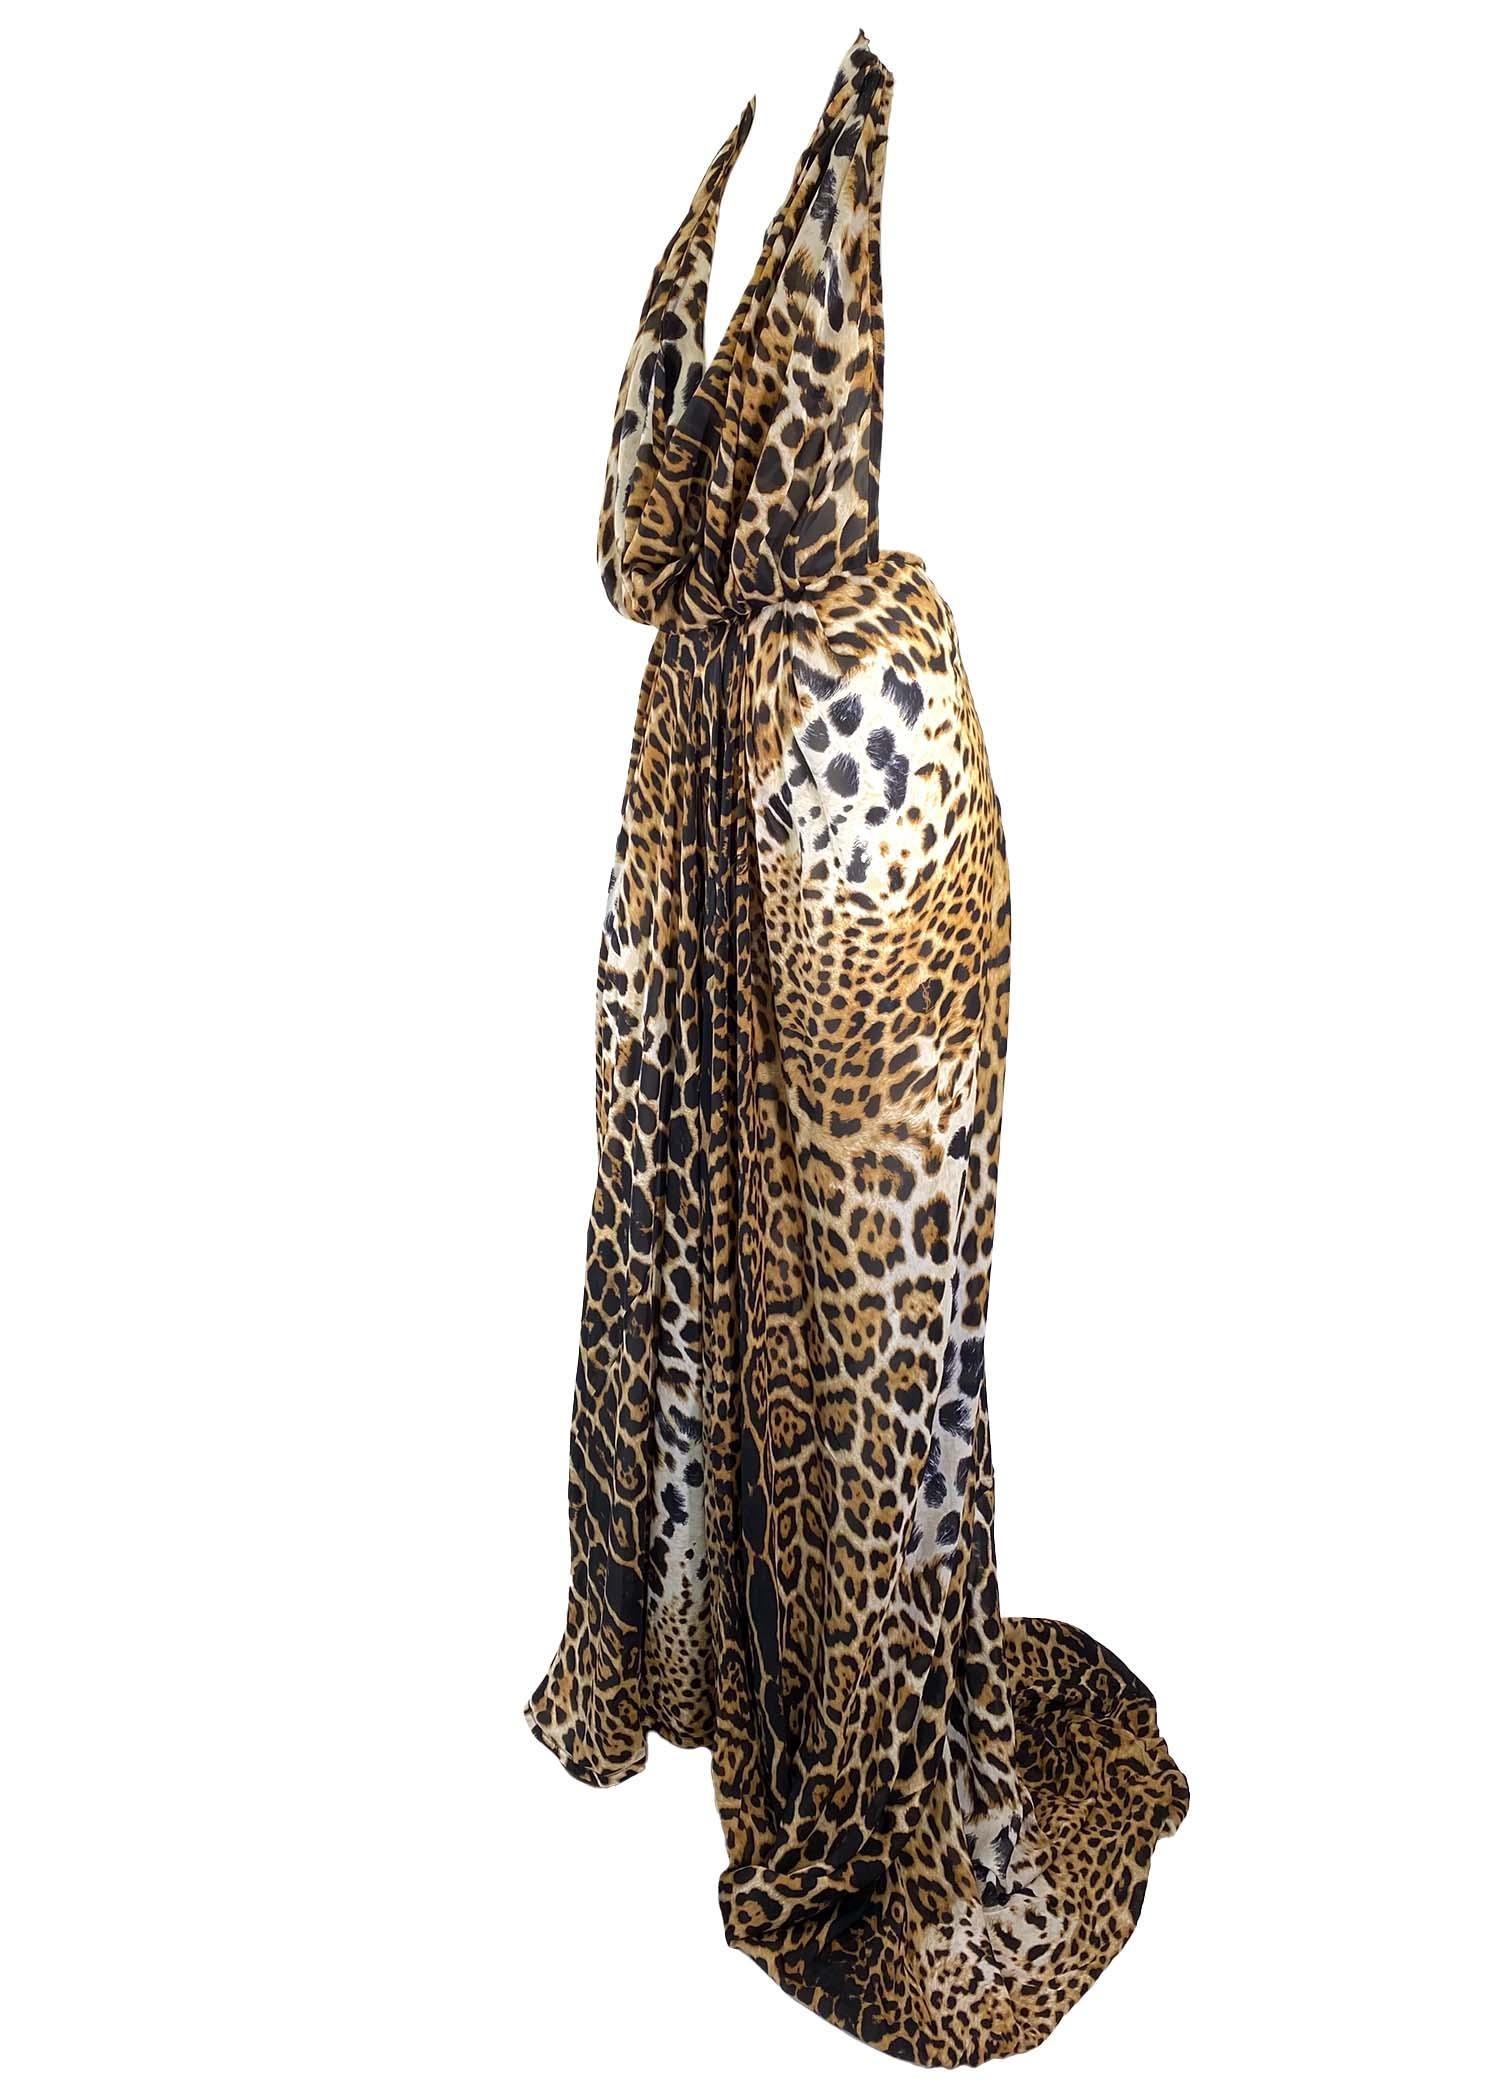 S/S 2002 Yves Saint Laurent by Tom Ford Silk Cheetah Print Gown Safari ...